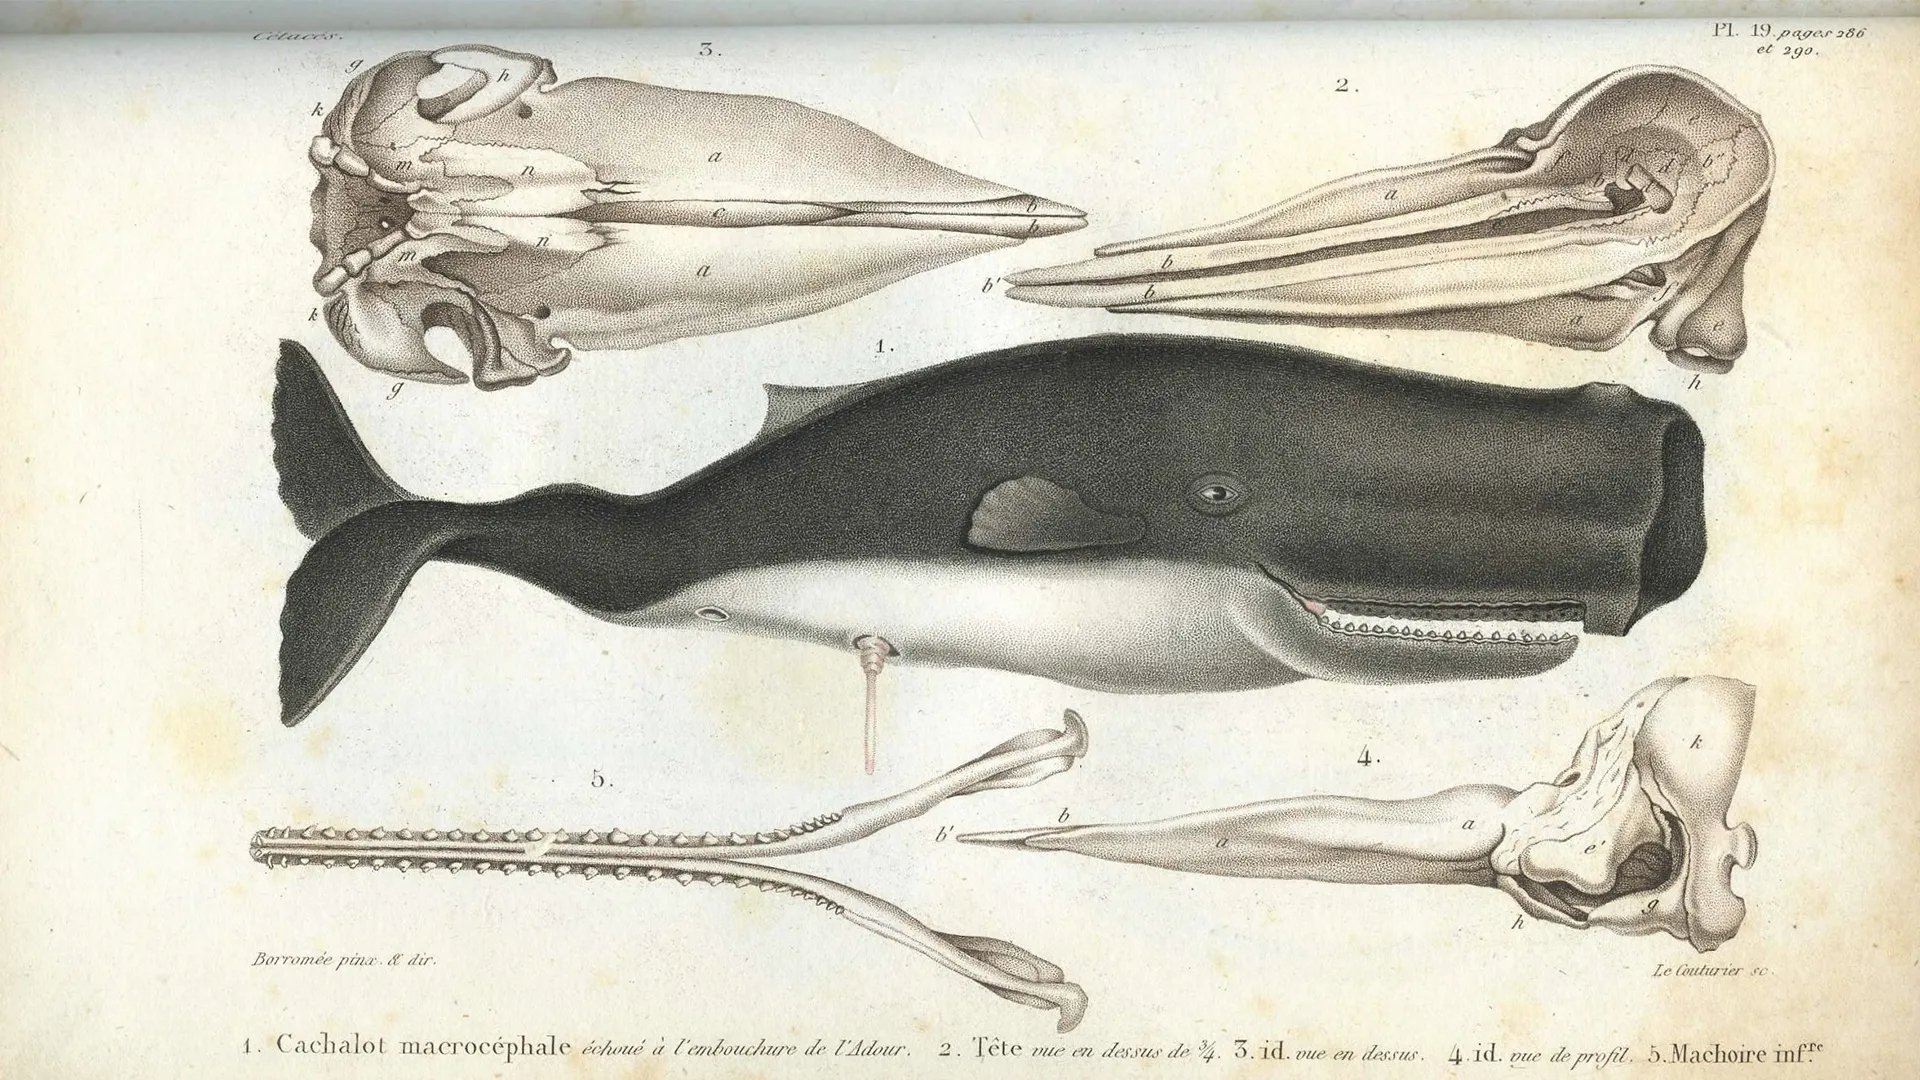 De L’histoire naturelle des Cetaces